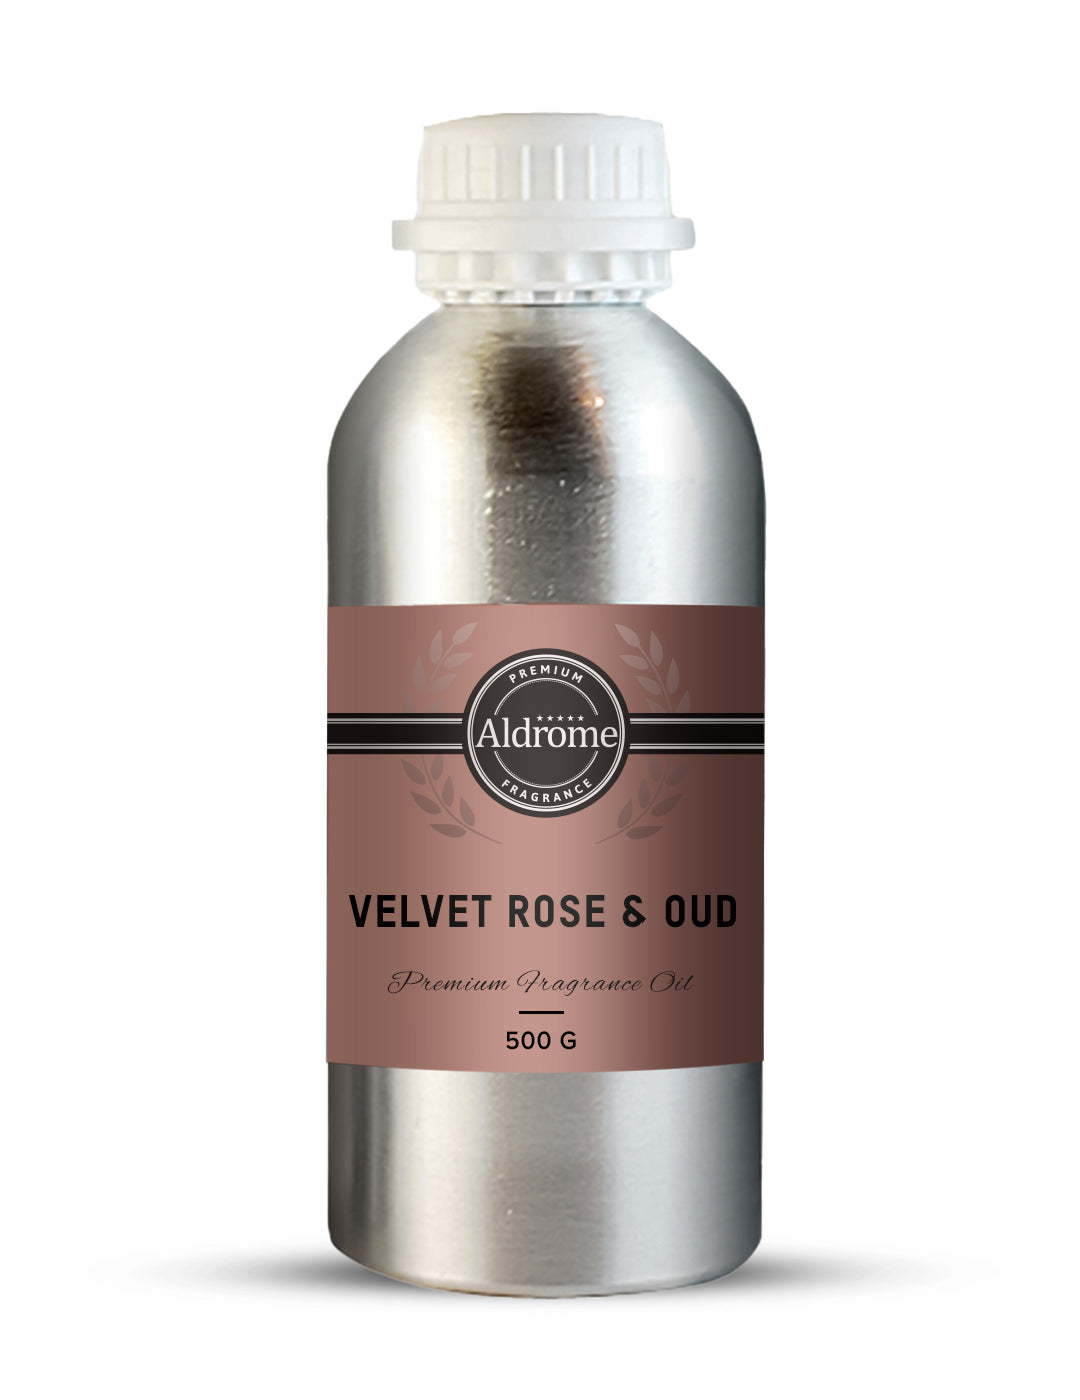 Velvet Rose & Oud Fragrance Oil - 500 G | Buy Velvet Rose & Oud Fragrance Oil